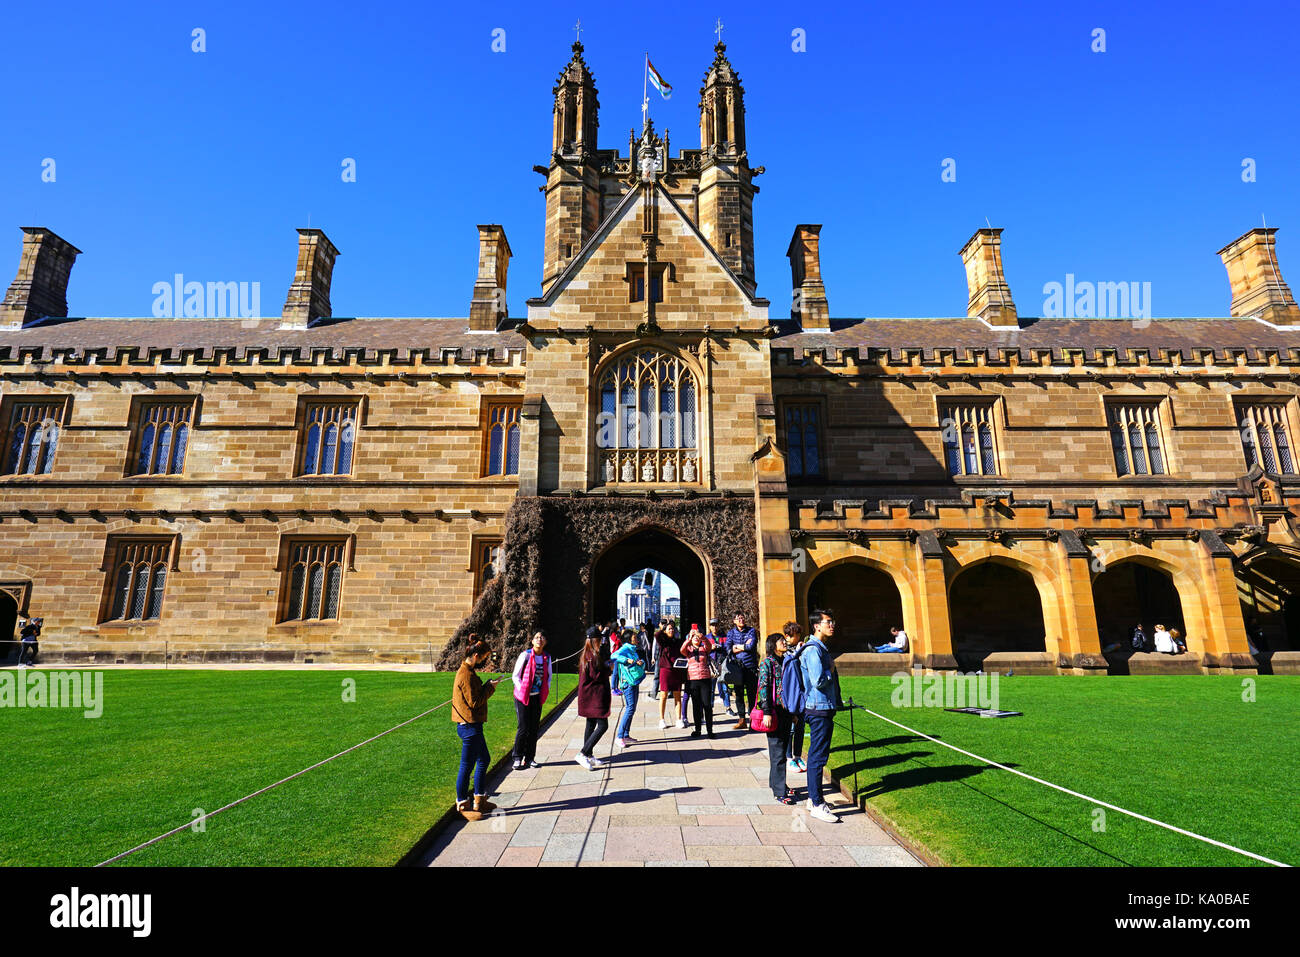 Vista del campus de la Universidad de Sydney (usyd), una de las más prestigiosas universidades de Australia Foto de stock